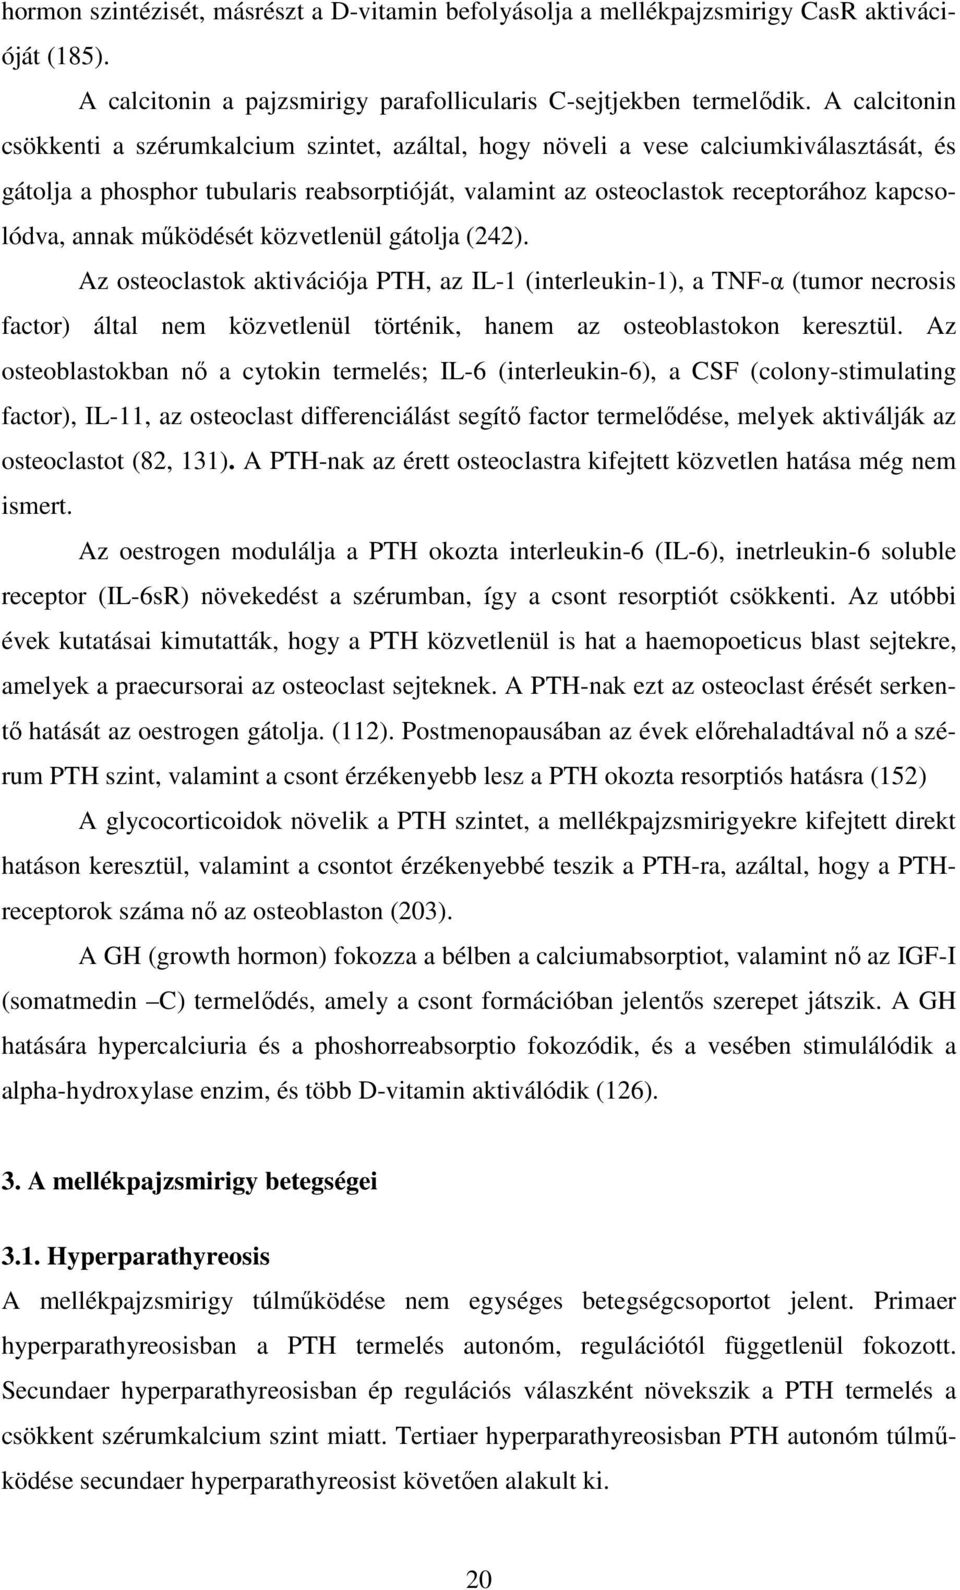 annak mőködését közvetlenül gátolja (242). Az osteoclastok aktivációja PTH, az IL-1 (interleukin-1), a TNF-α (tumor necrosis factor) által nem közvetlenül történik, hanem az osteoblastokon keresztül.